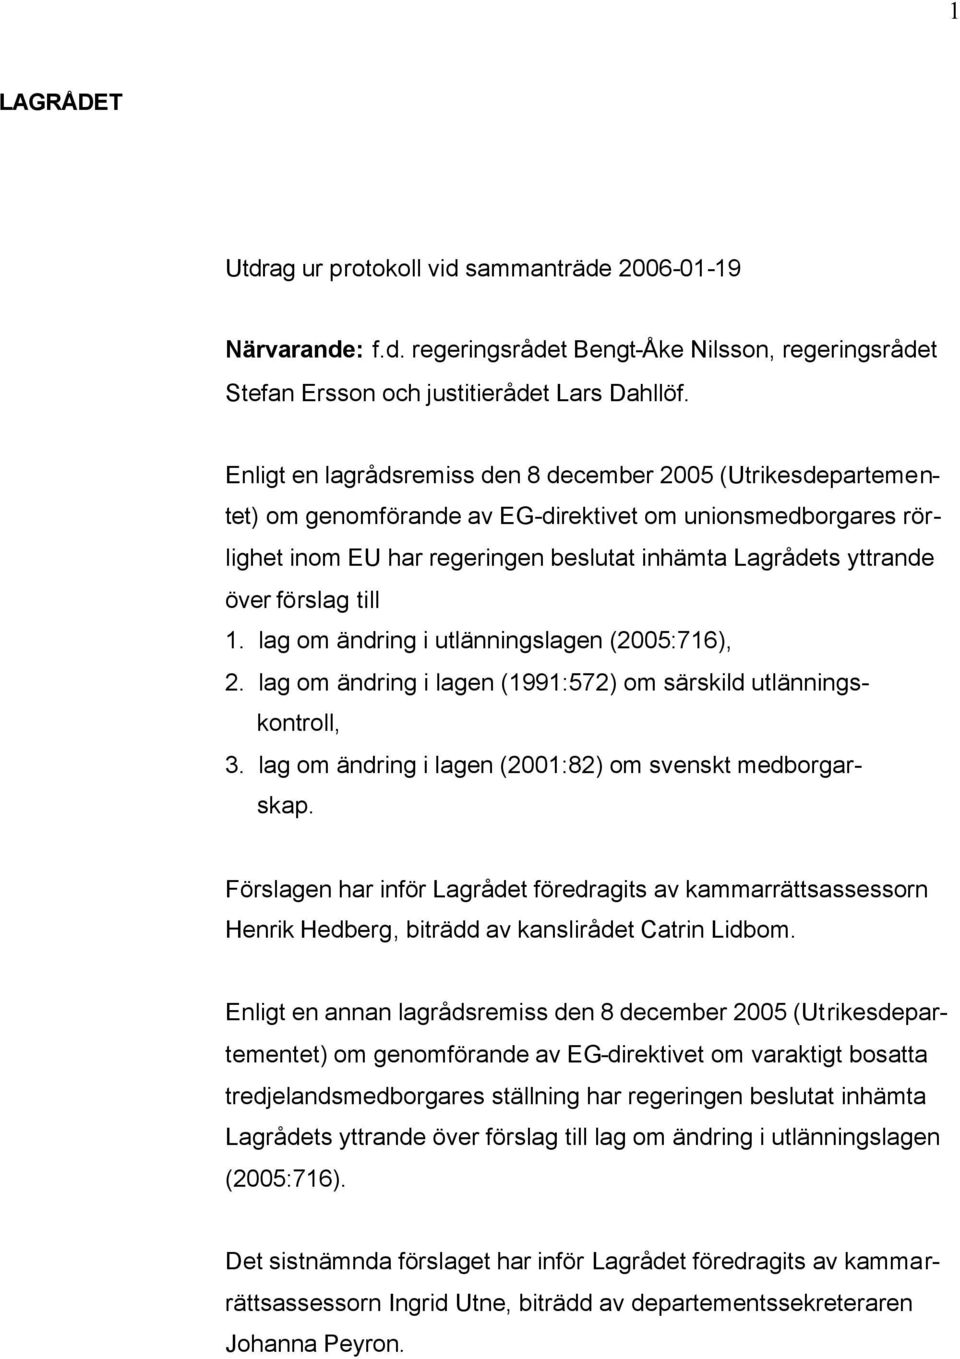 förslag till 1. lag om ändring i utlänningslagen (2005:716), 2. lag om ändring i lagen (1991:572) om särskild utlänningskontroll, 3. lag om ändring i lagen (2001:82) om svenskt medborgarskap.